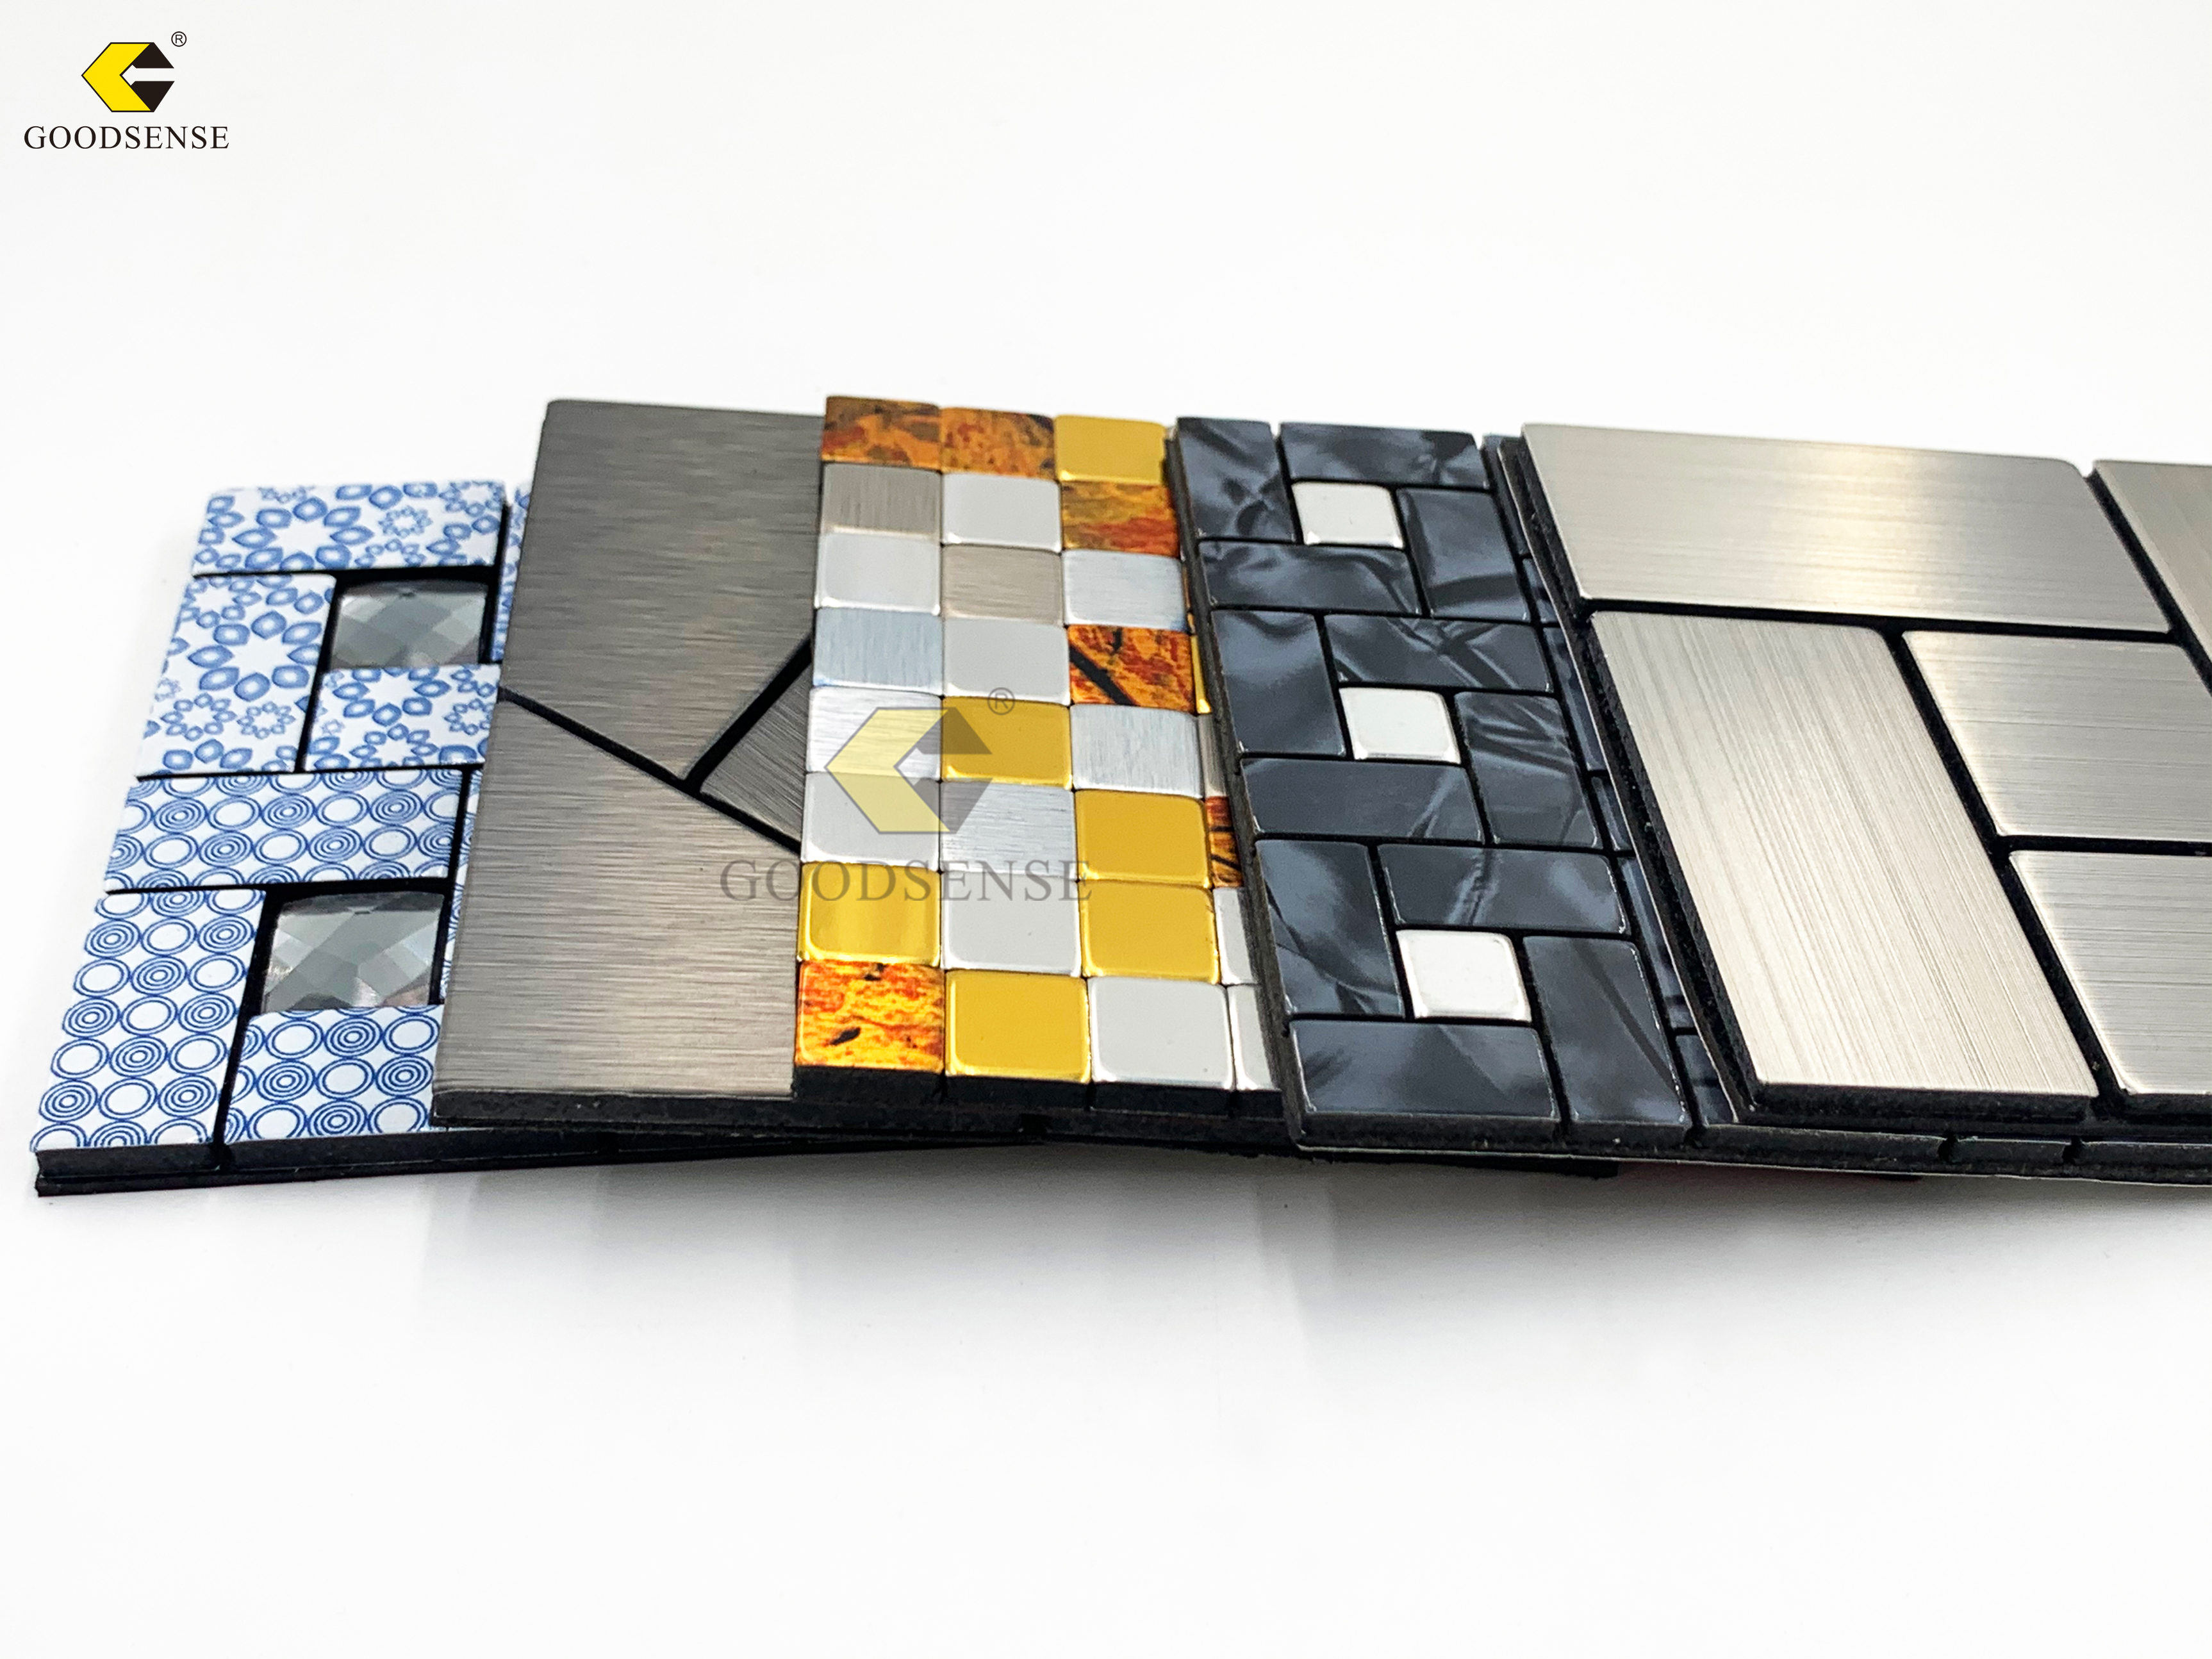 Panel compuesto de aluminio mosaico Goodsense ACP